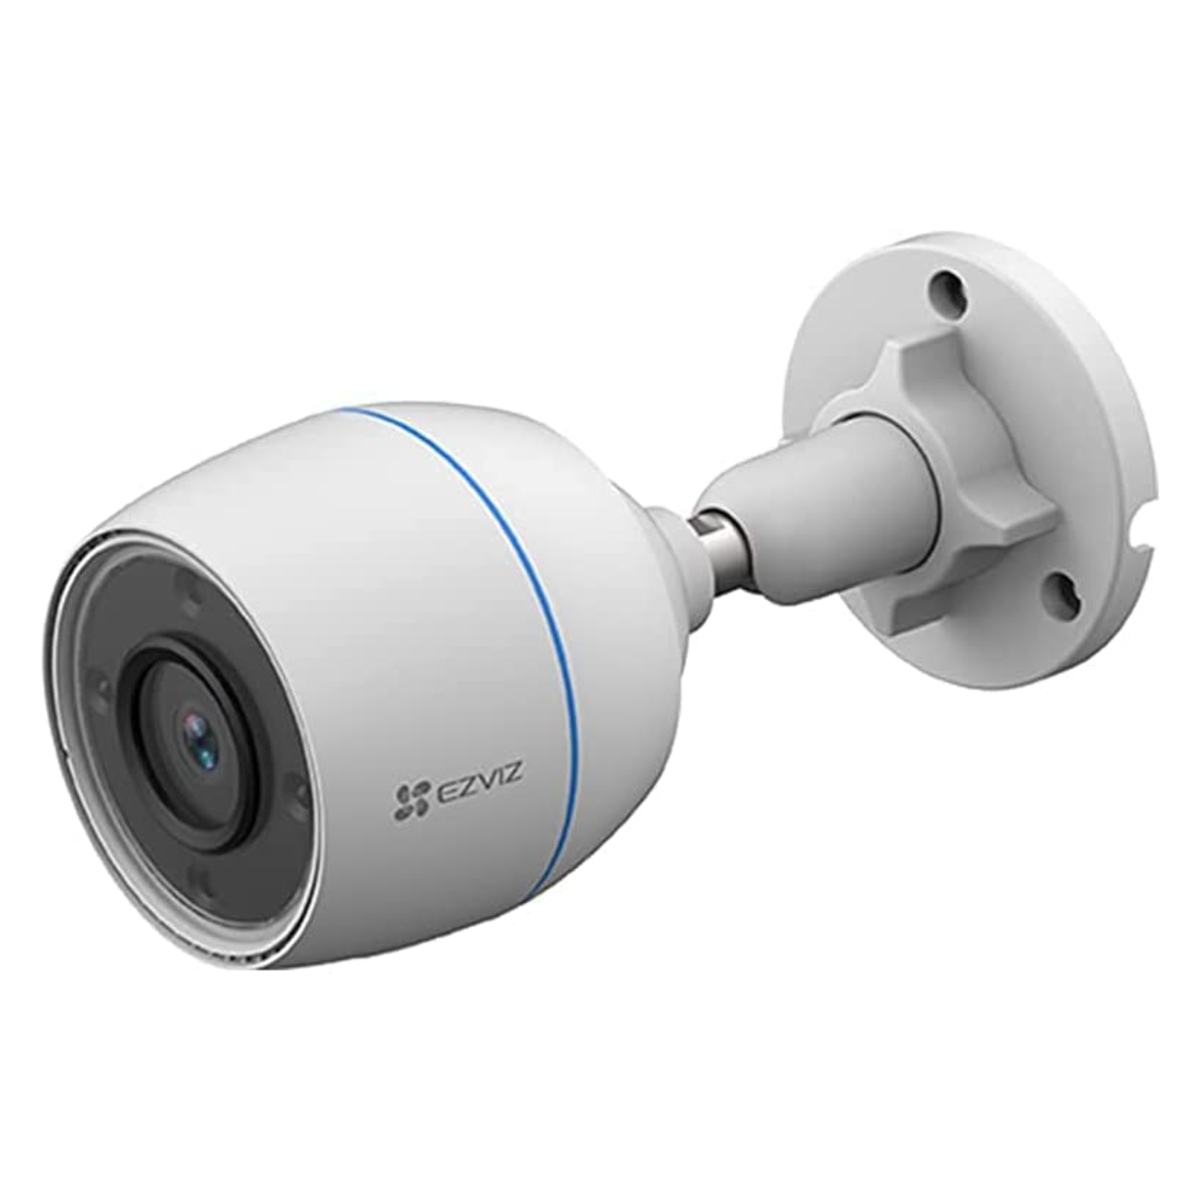 أيزفيز كاميرا مراقبة منزلية ذكية H3c، واي فاي، لون أبيض، CS-H3c-R100-1K2WF